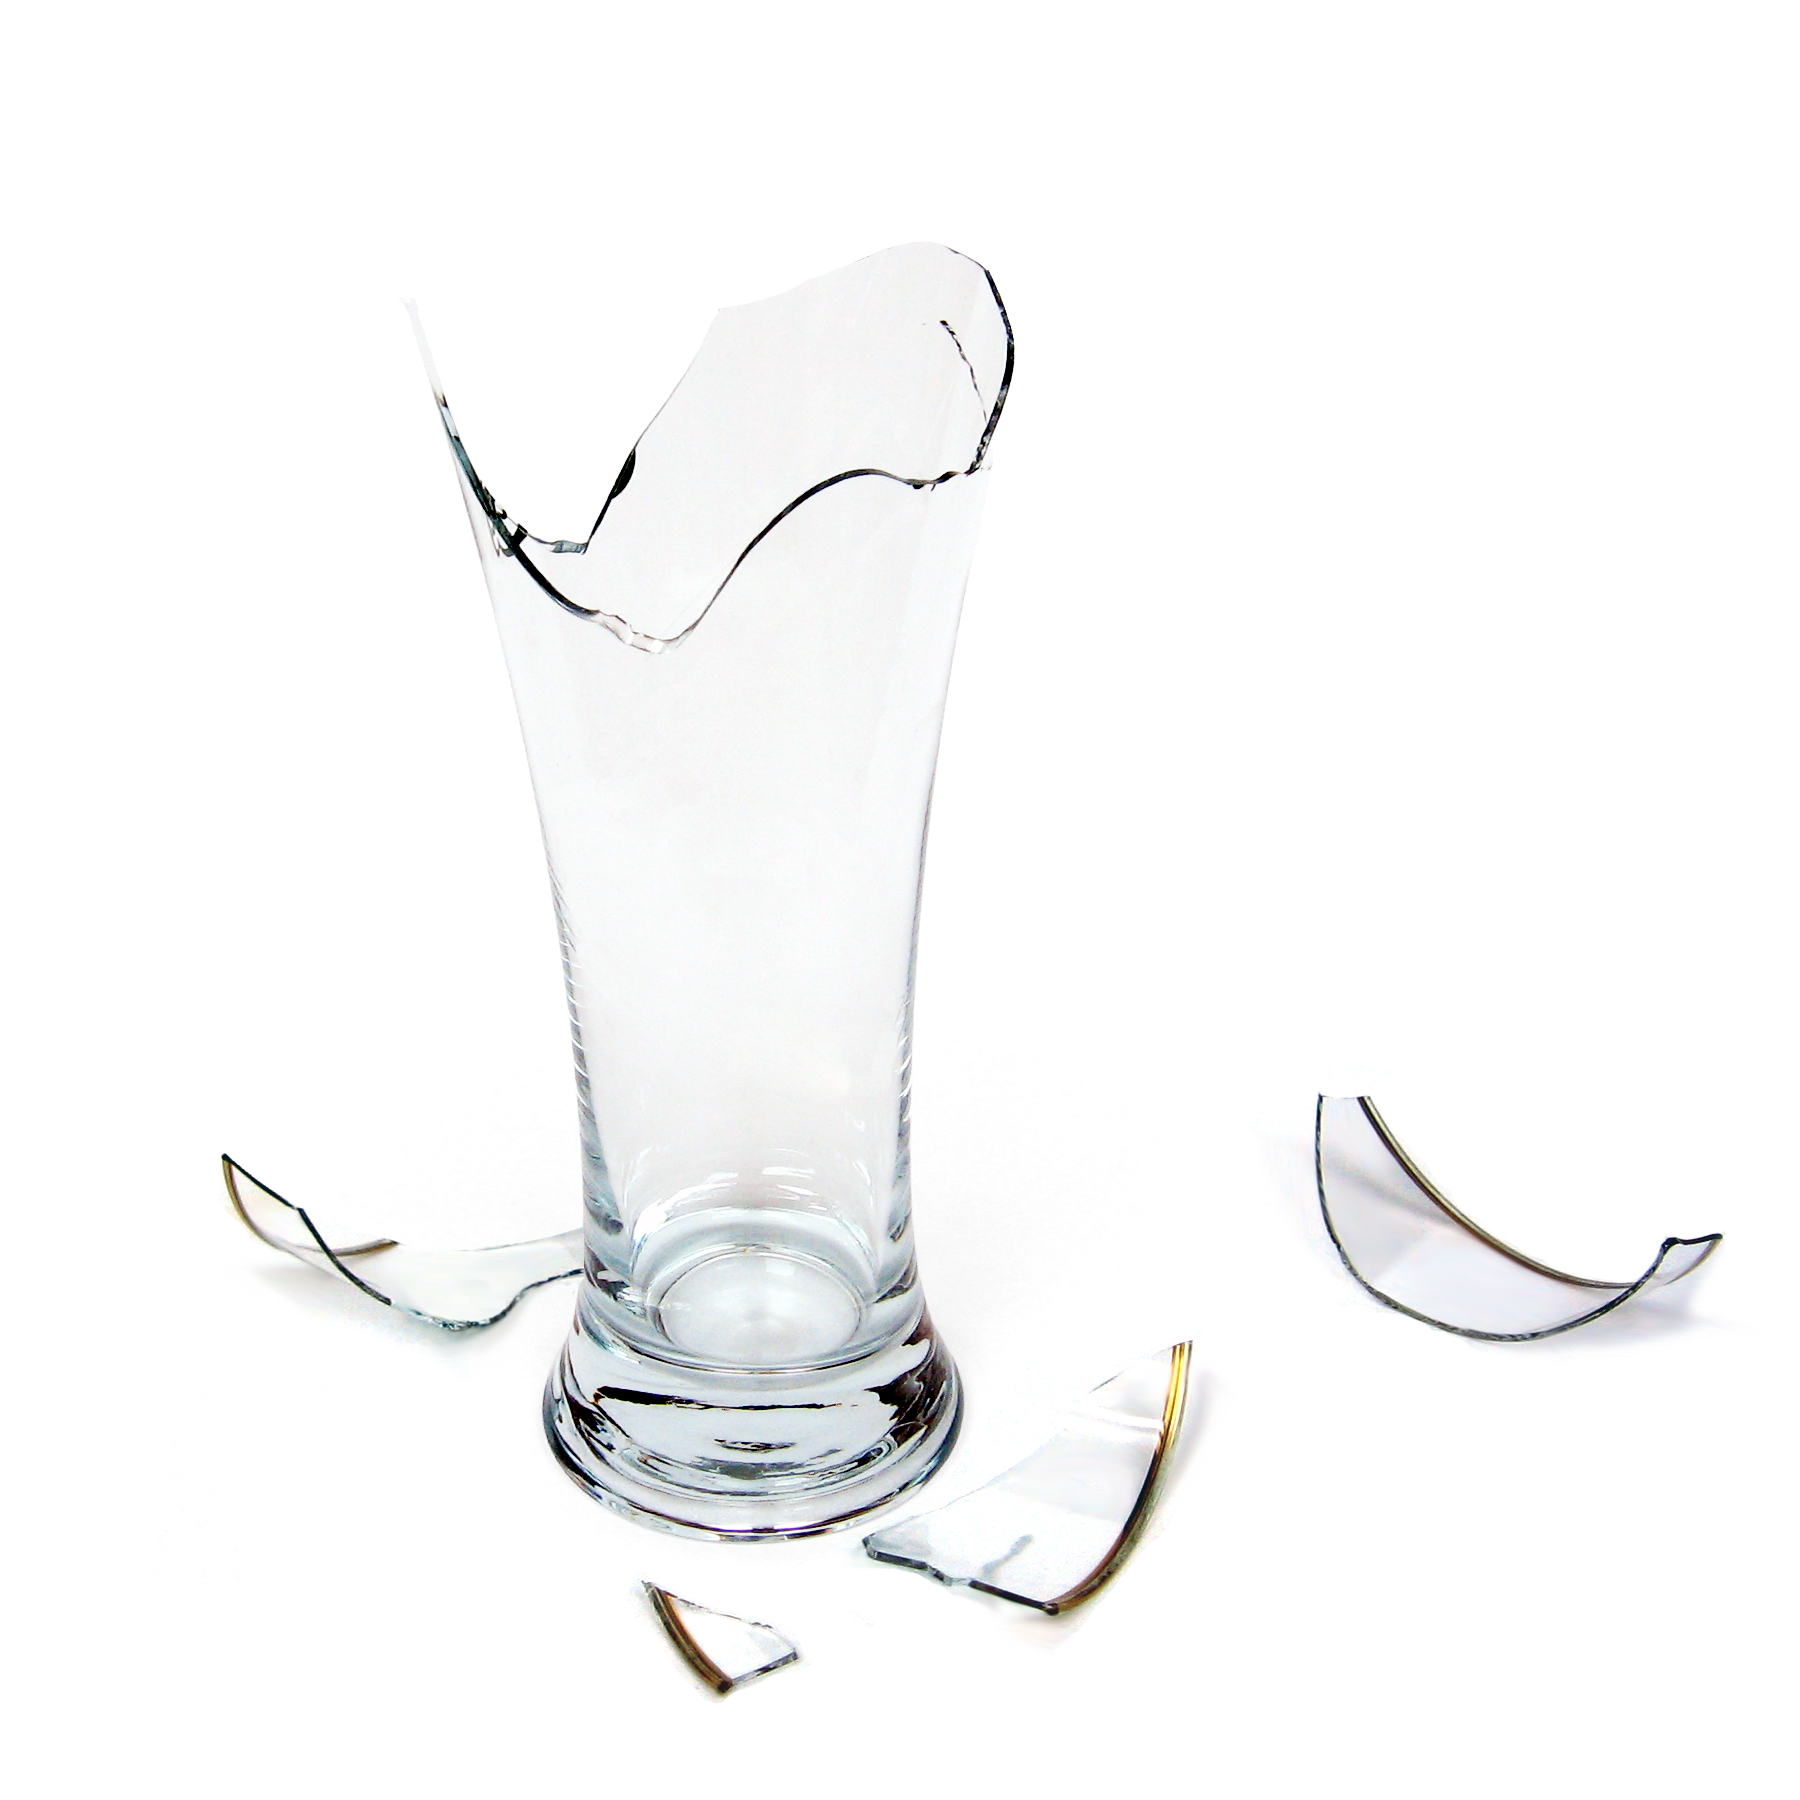 Разбилась стеклянный стакан. Стеклянные предметы. Разбитая стеклянная ваза. Стеклянные предметы разбитые. Разбитый стакан.